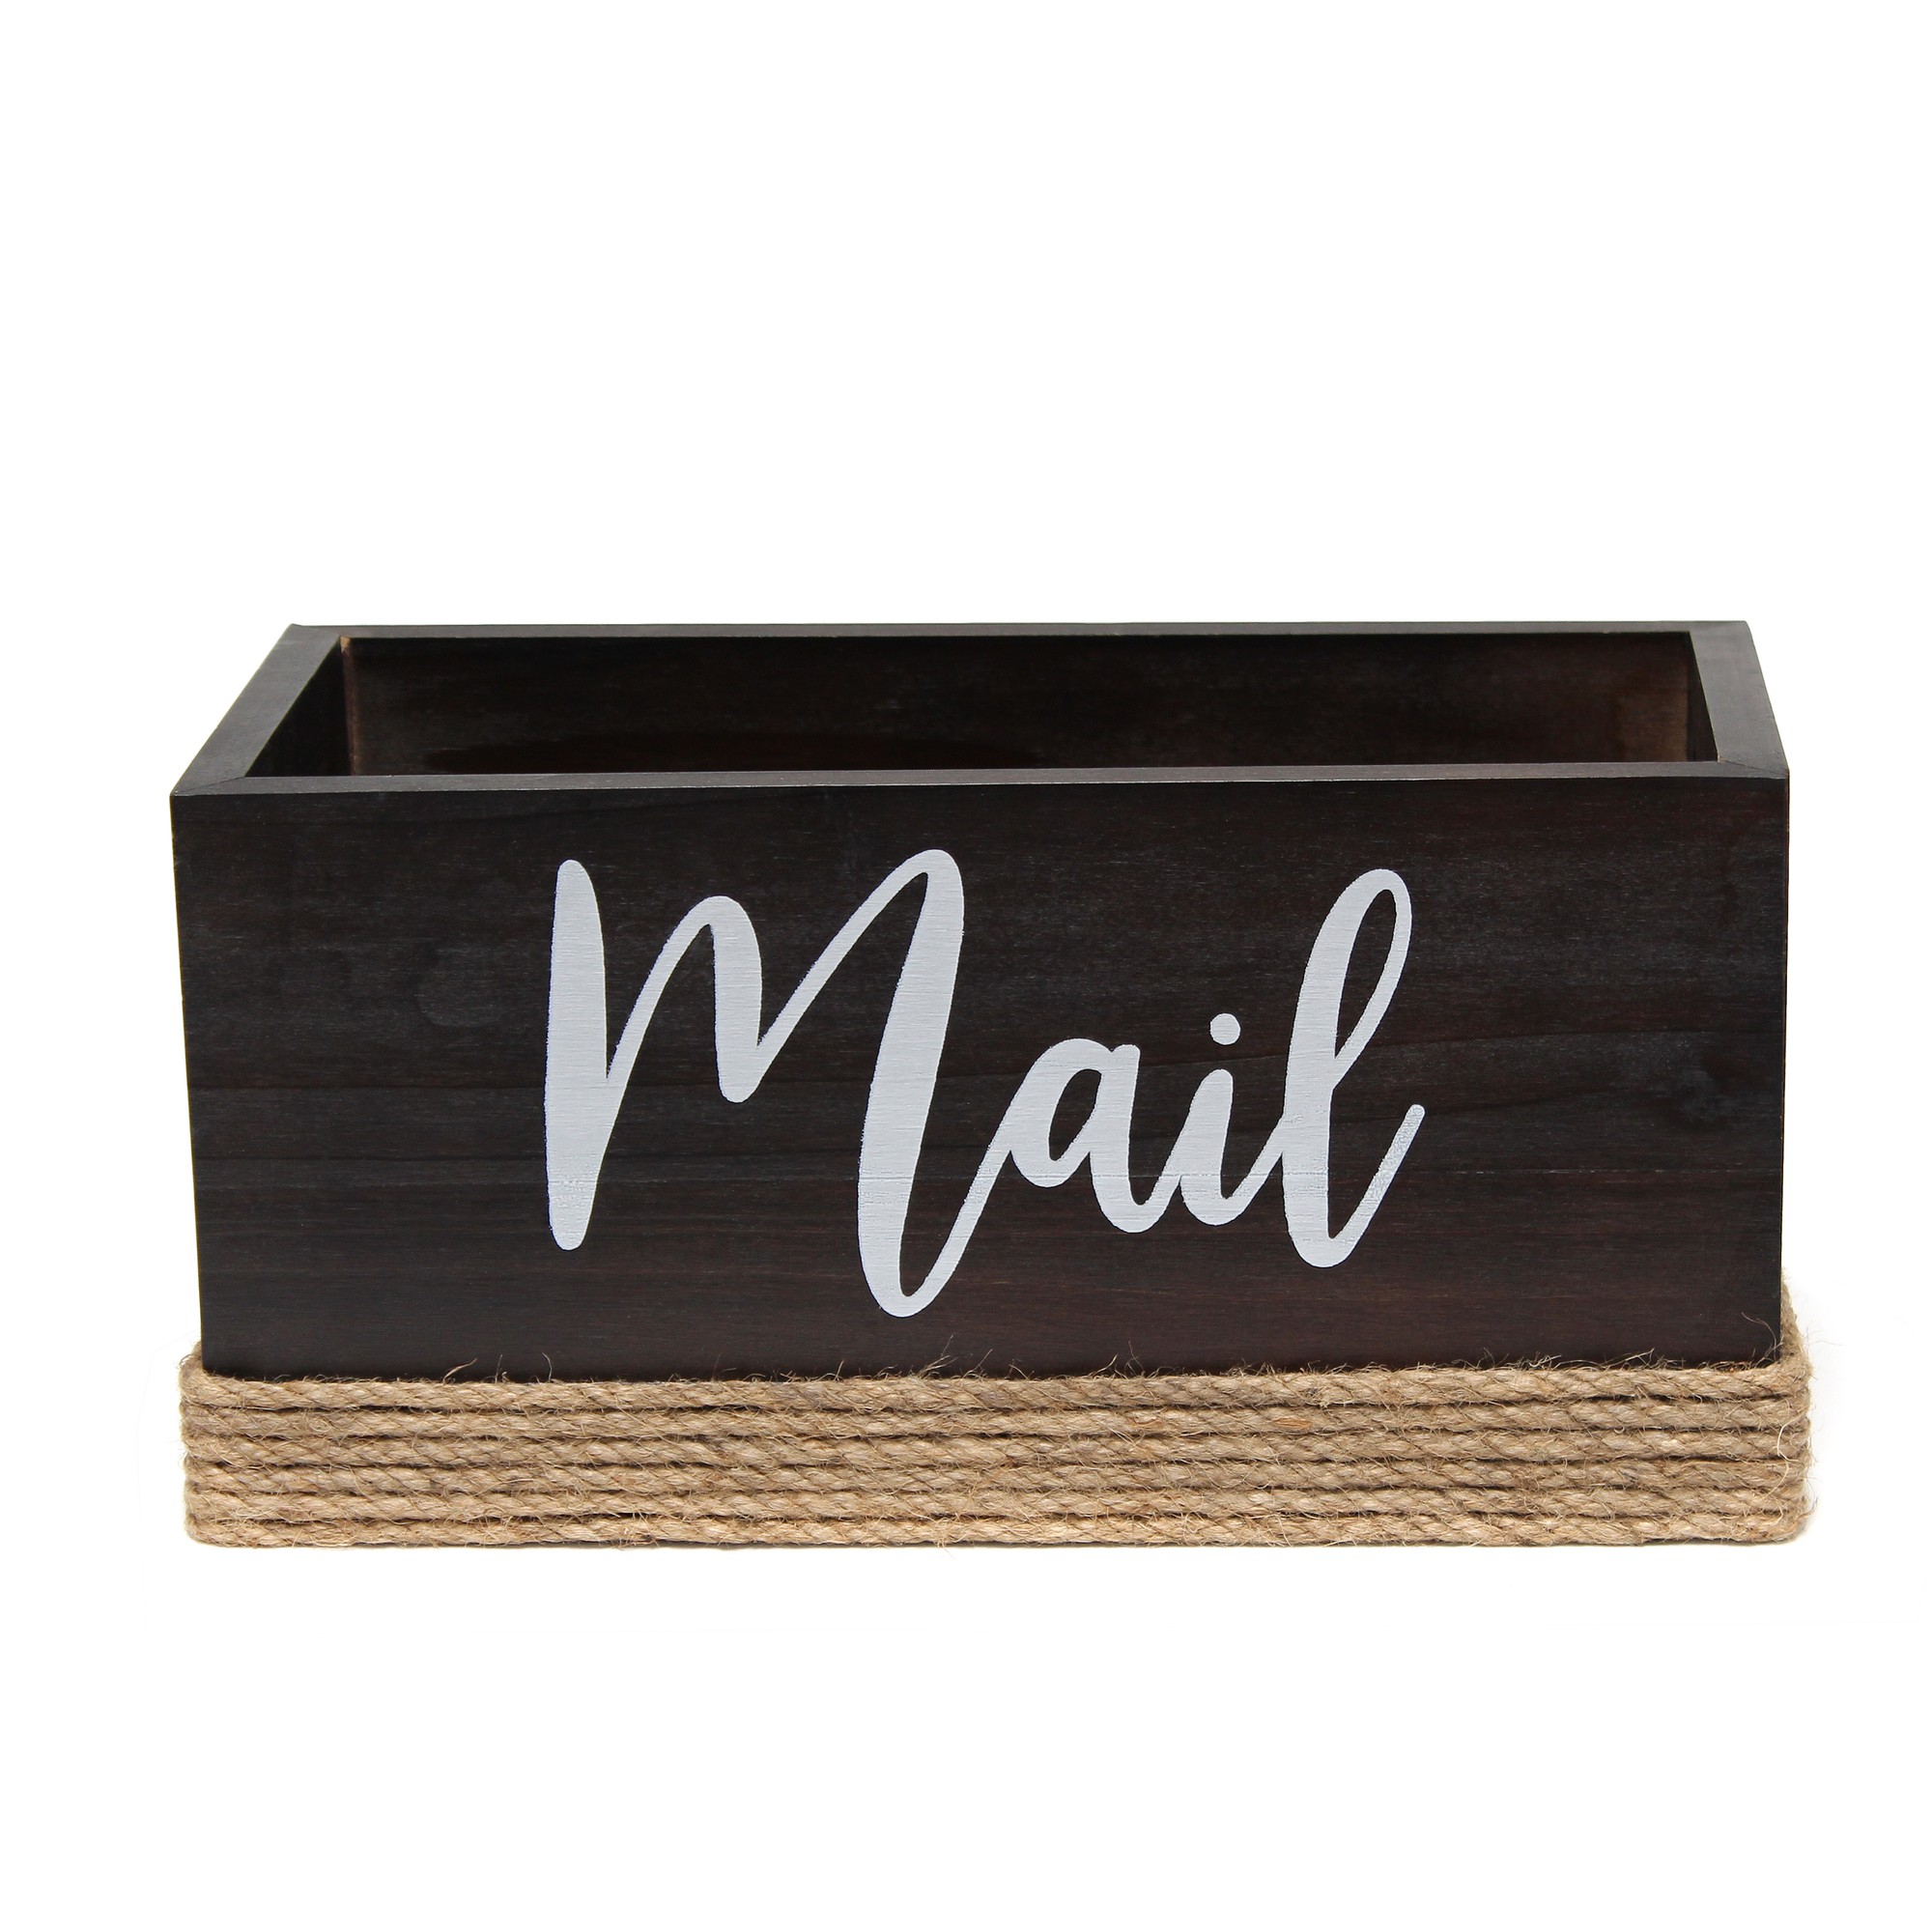 Wood Mail Holder "Mail" Script in White  Dark Wood